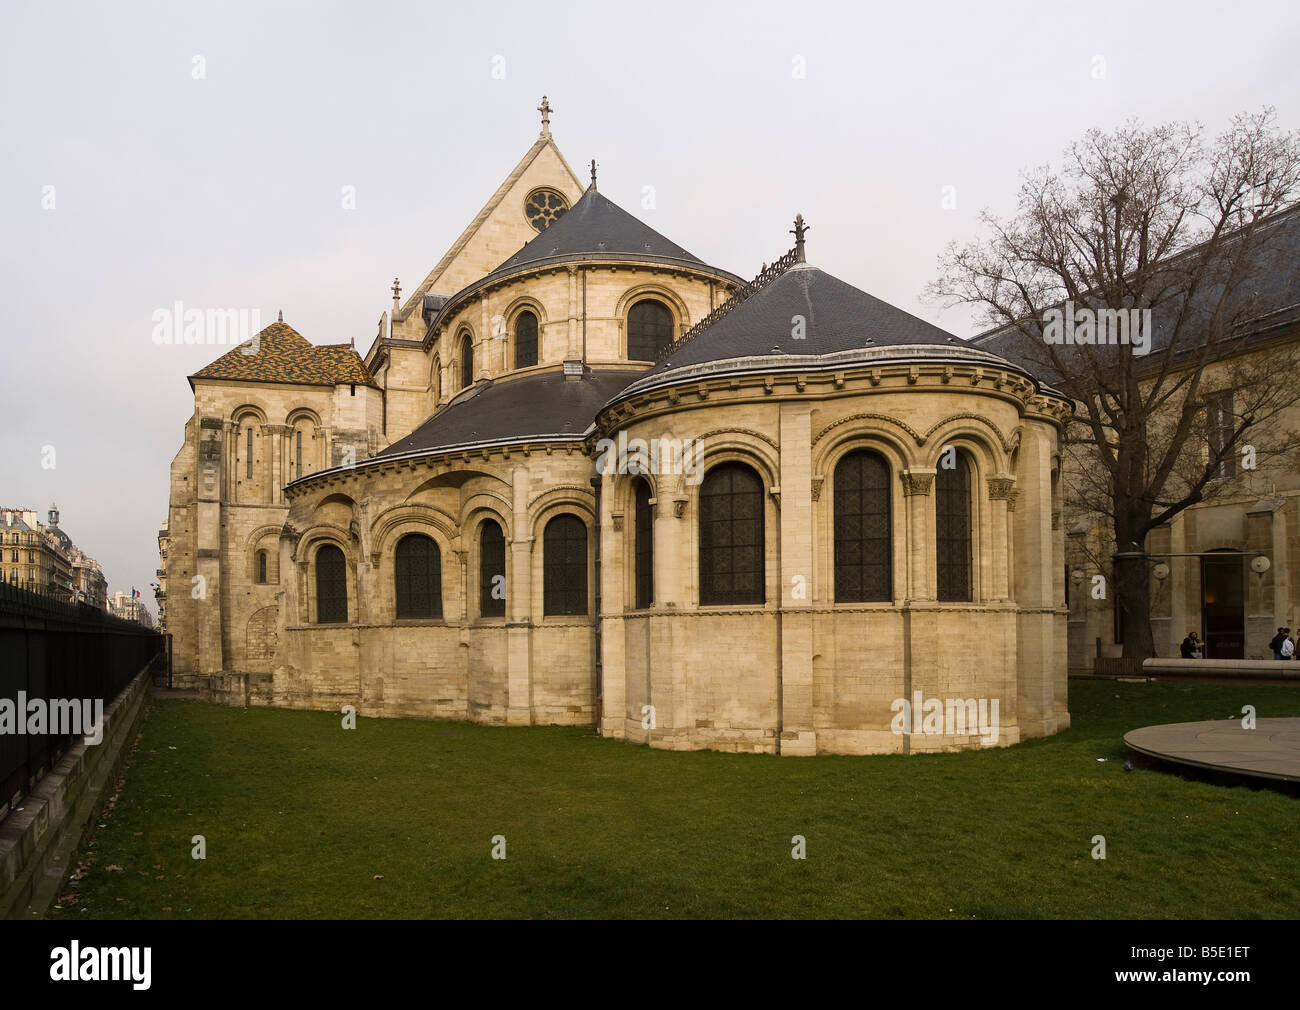 Paris France ,Chevet of St Martin des Champs church in Paris todays musée d'arts et métiers Stock Photo